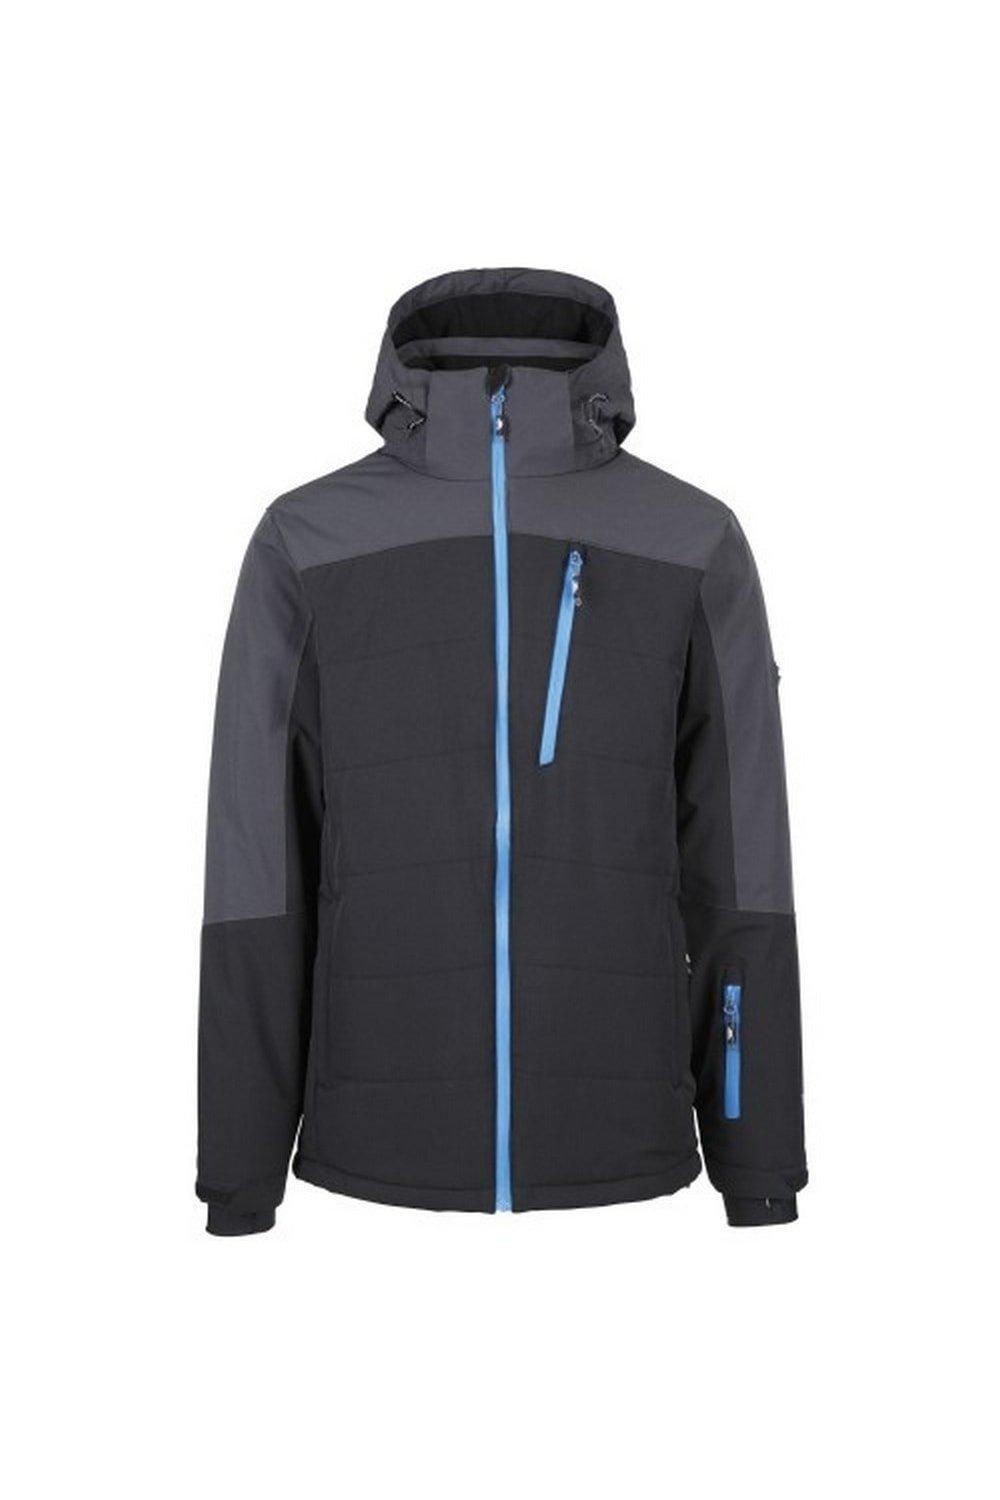 Лыжная куртка Bowie Trespass, черный мужская лыжная куртка bowie темно синяя trespass цвет azul